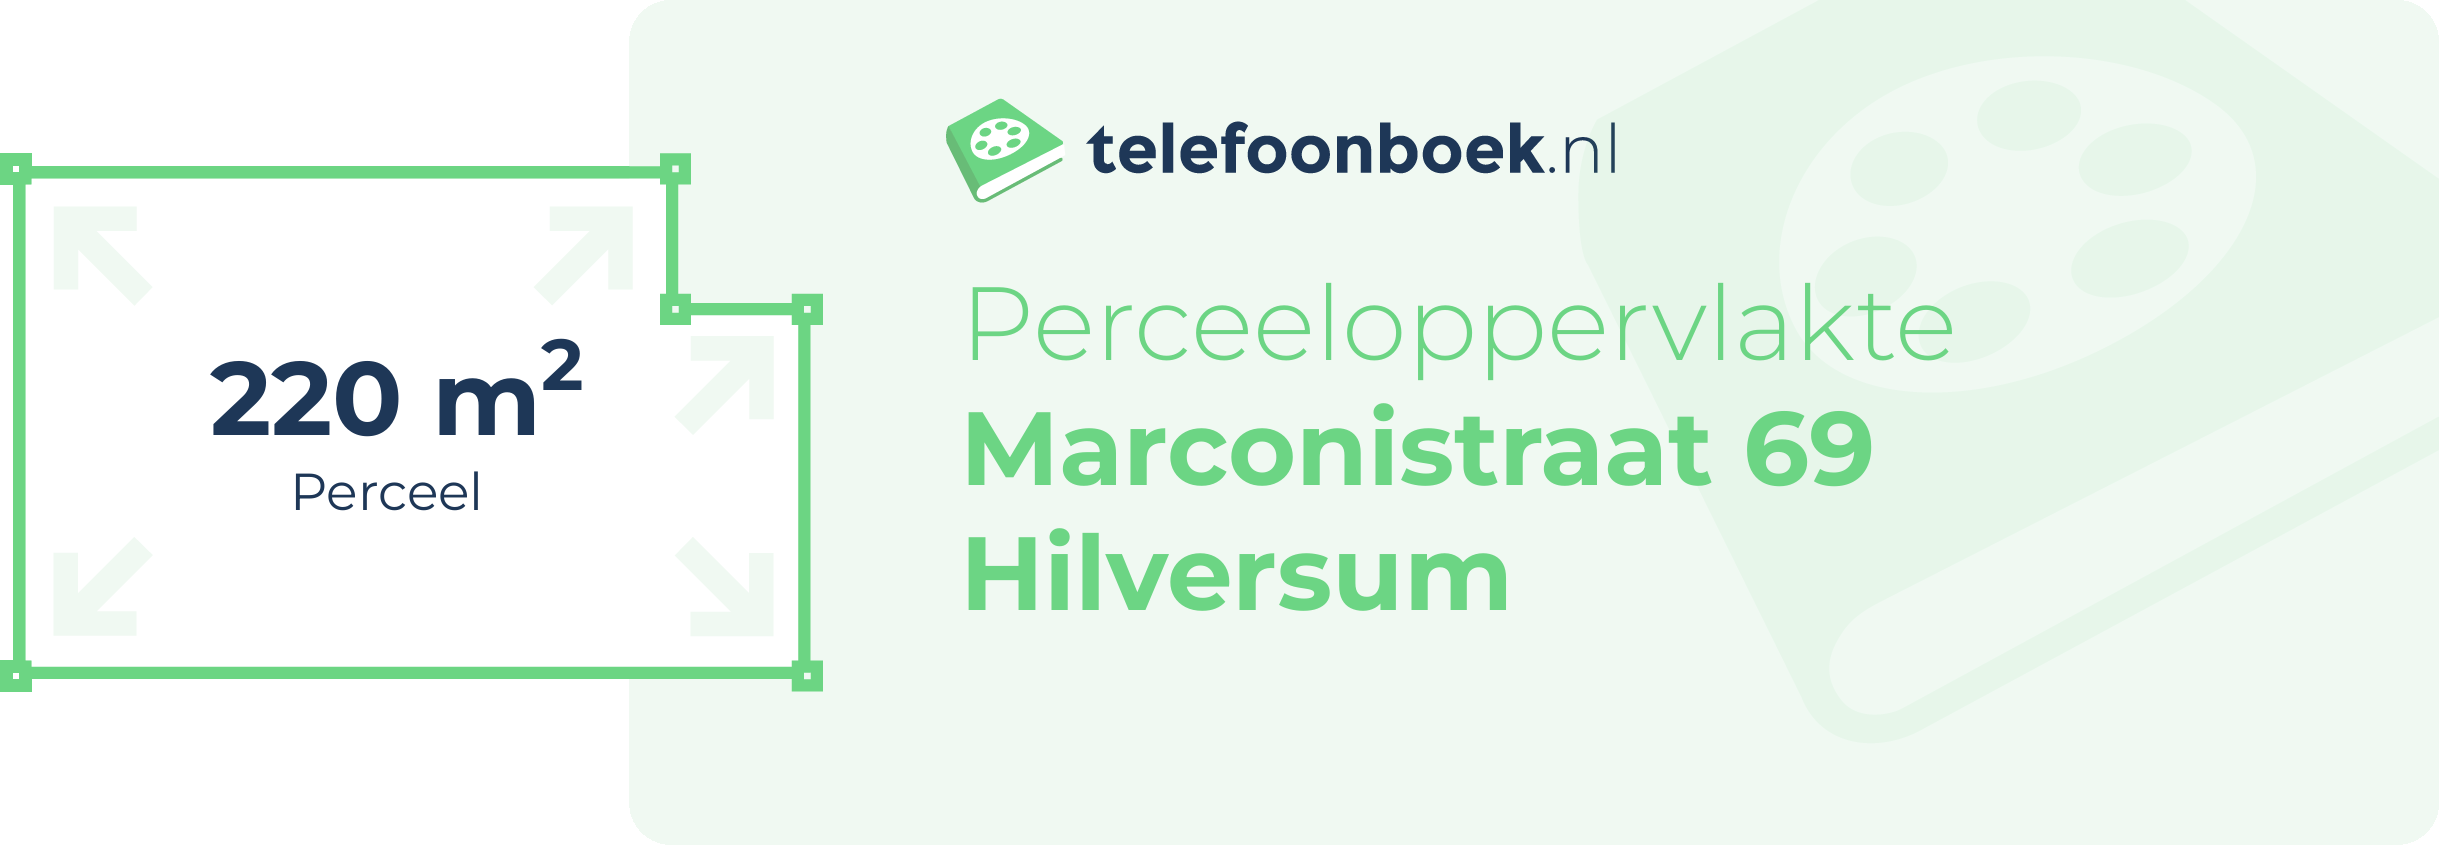 Perceeloppervlakte Marconistraat 69 Hilversum